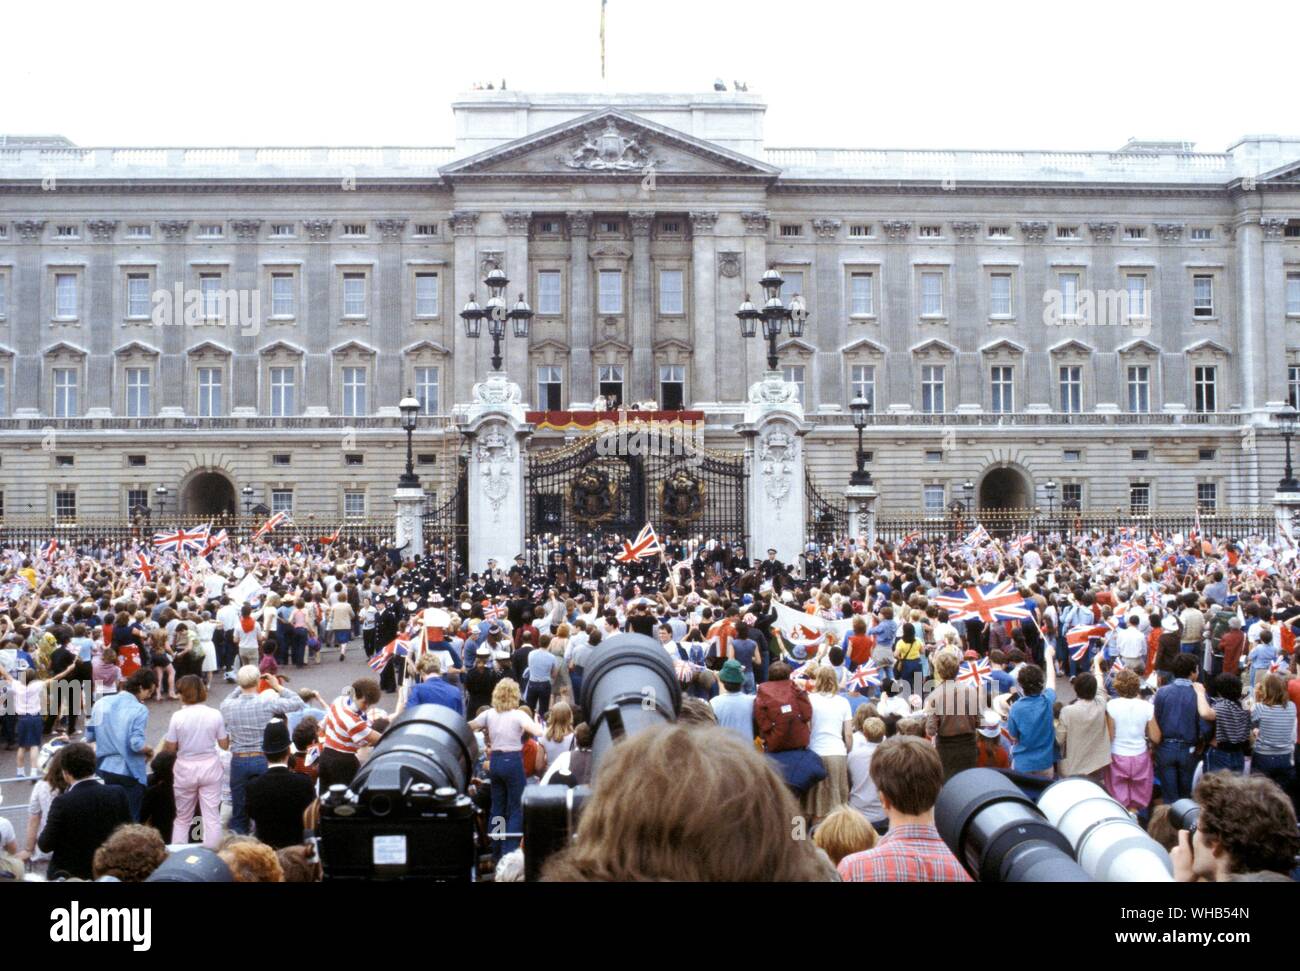 Des foules de wellwishers à l'extérieur de Buckingham Palace pour voir le Prince Charles et de Lady Diana Spencer le jour de leur mariage le 29 juillet 1981. Banque D'Images